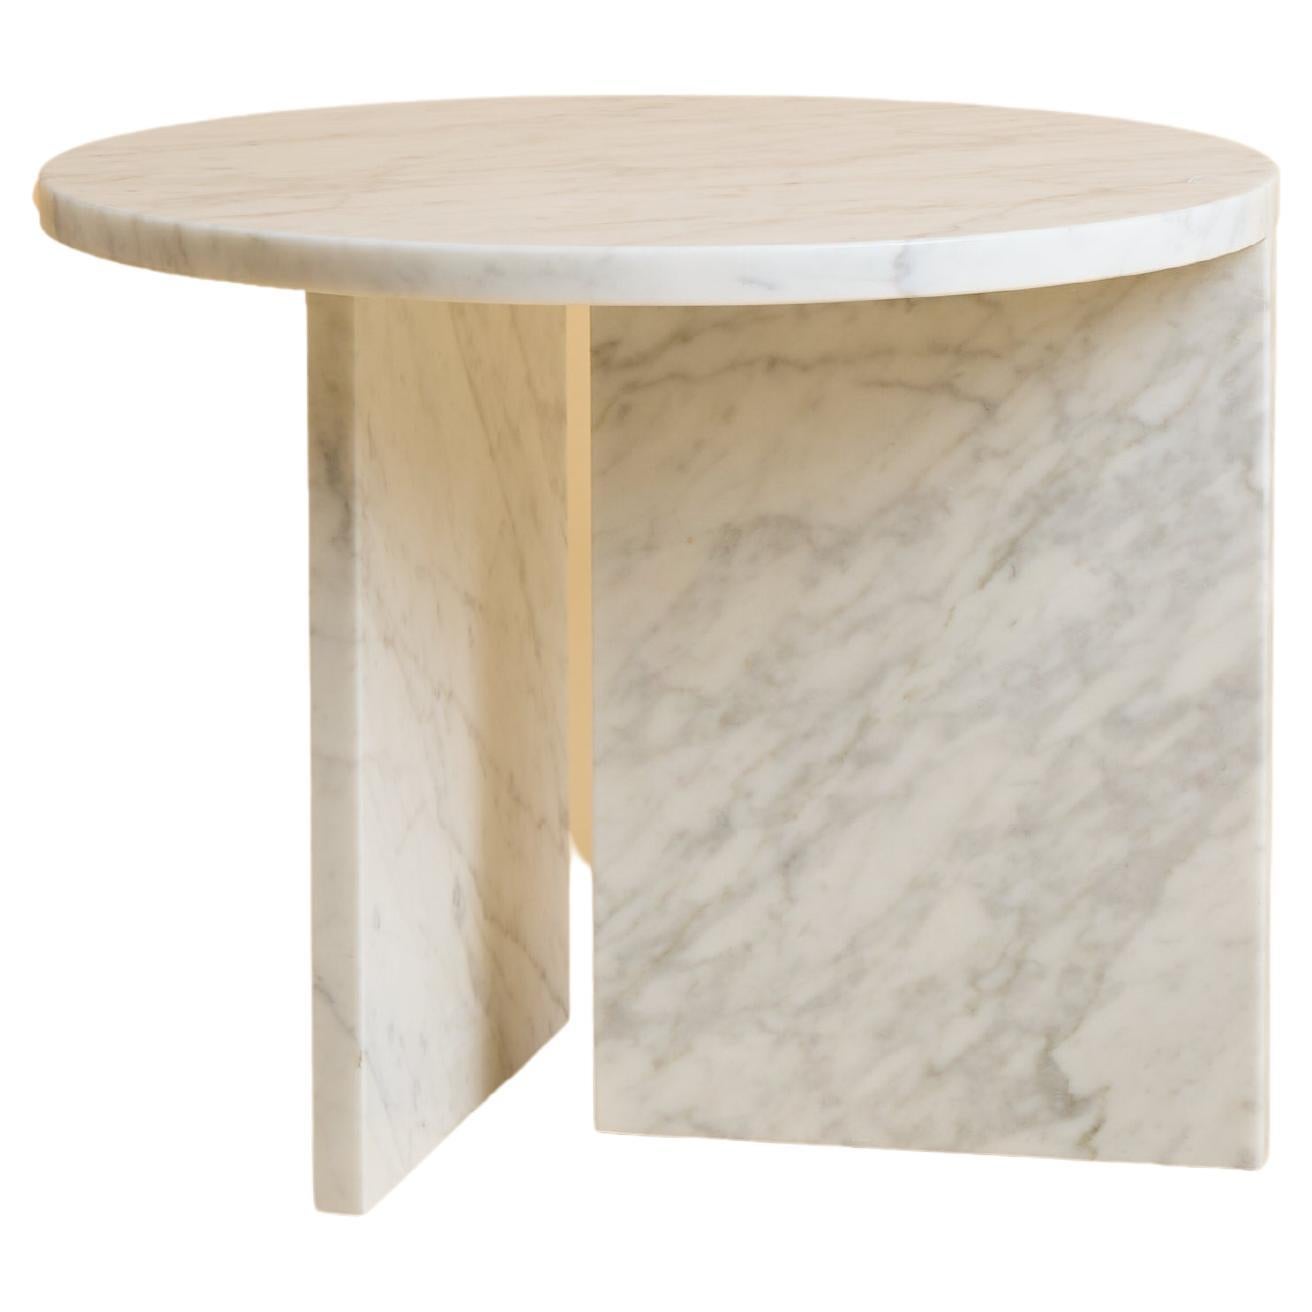 Table basse circulaire en marbre de Carrare, fabriquée en Italie